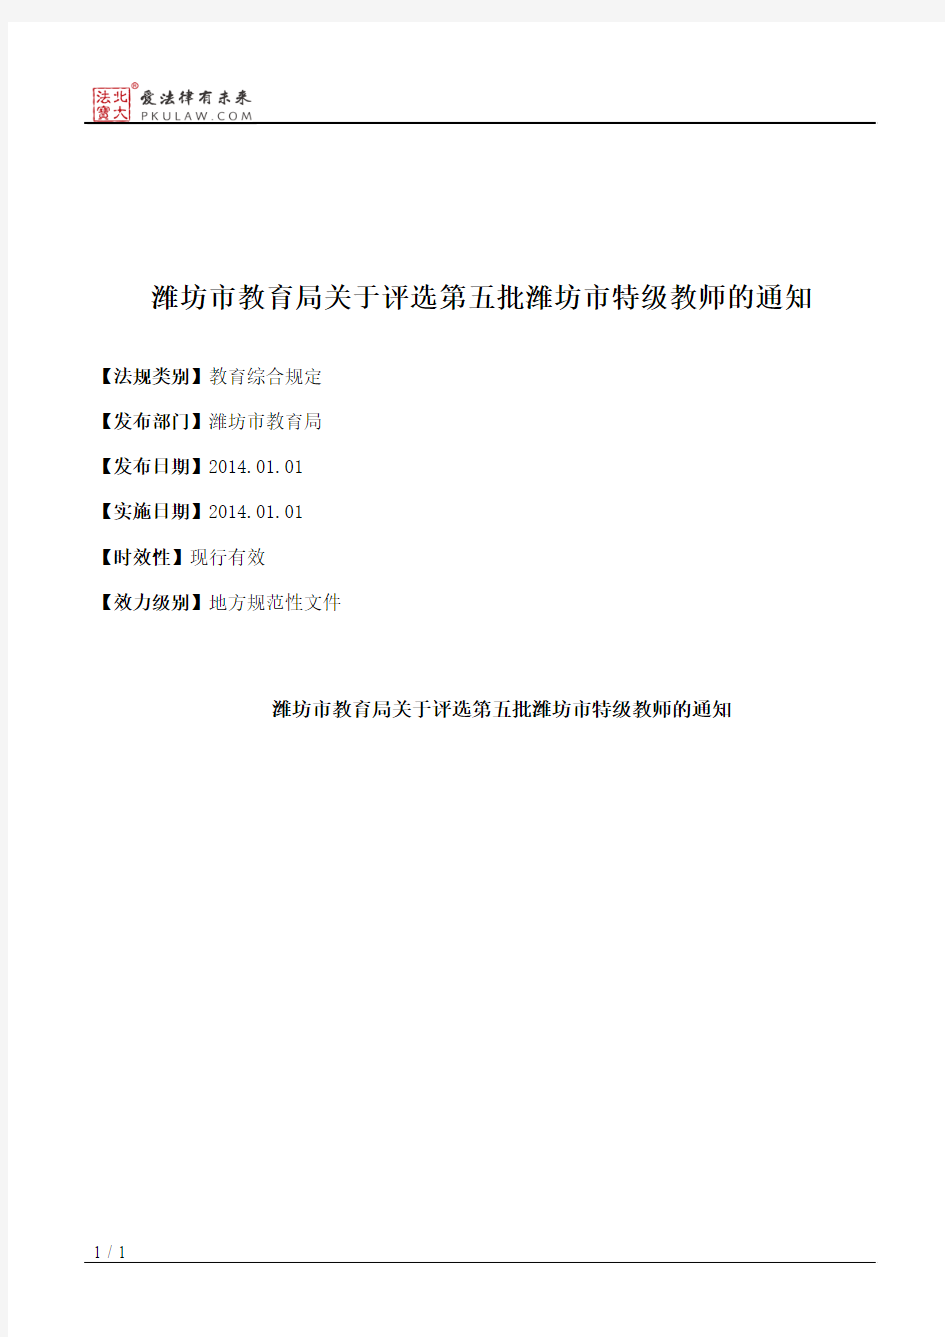 潍坊市教育局关于评选第五批潍坊市特级教师的通知